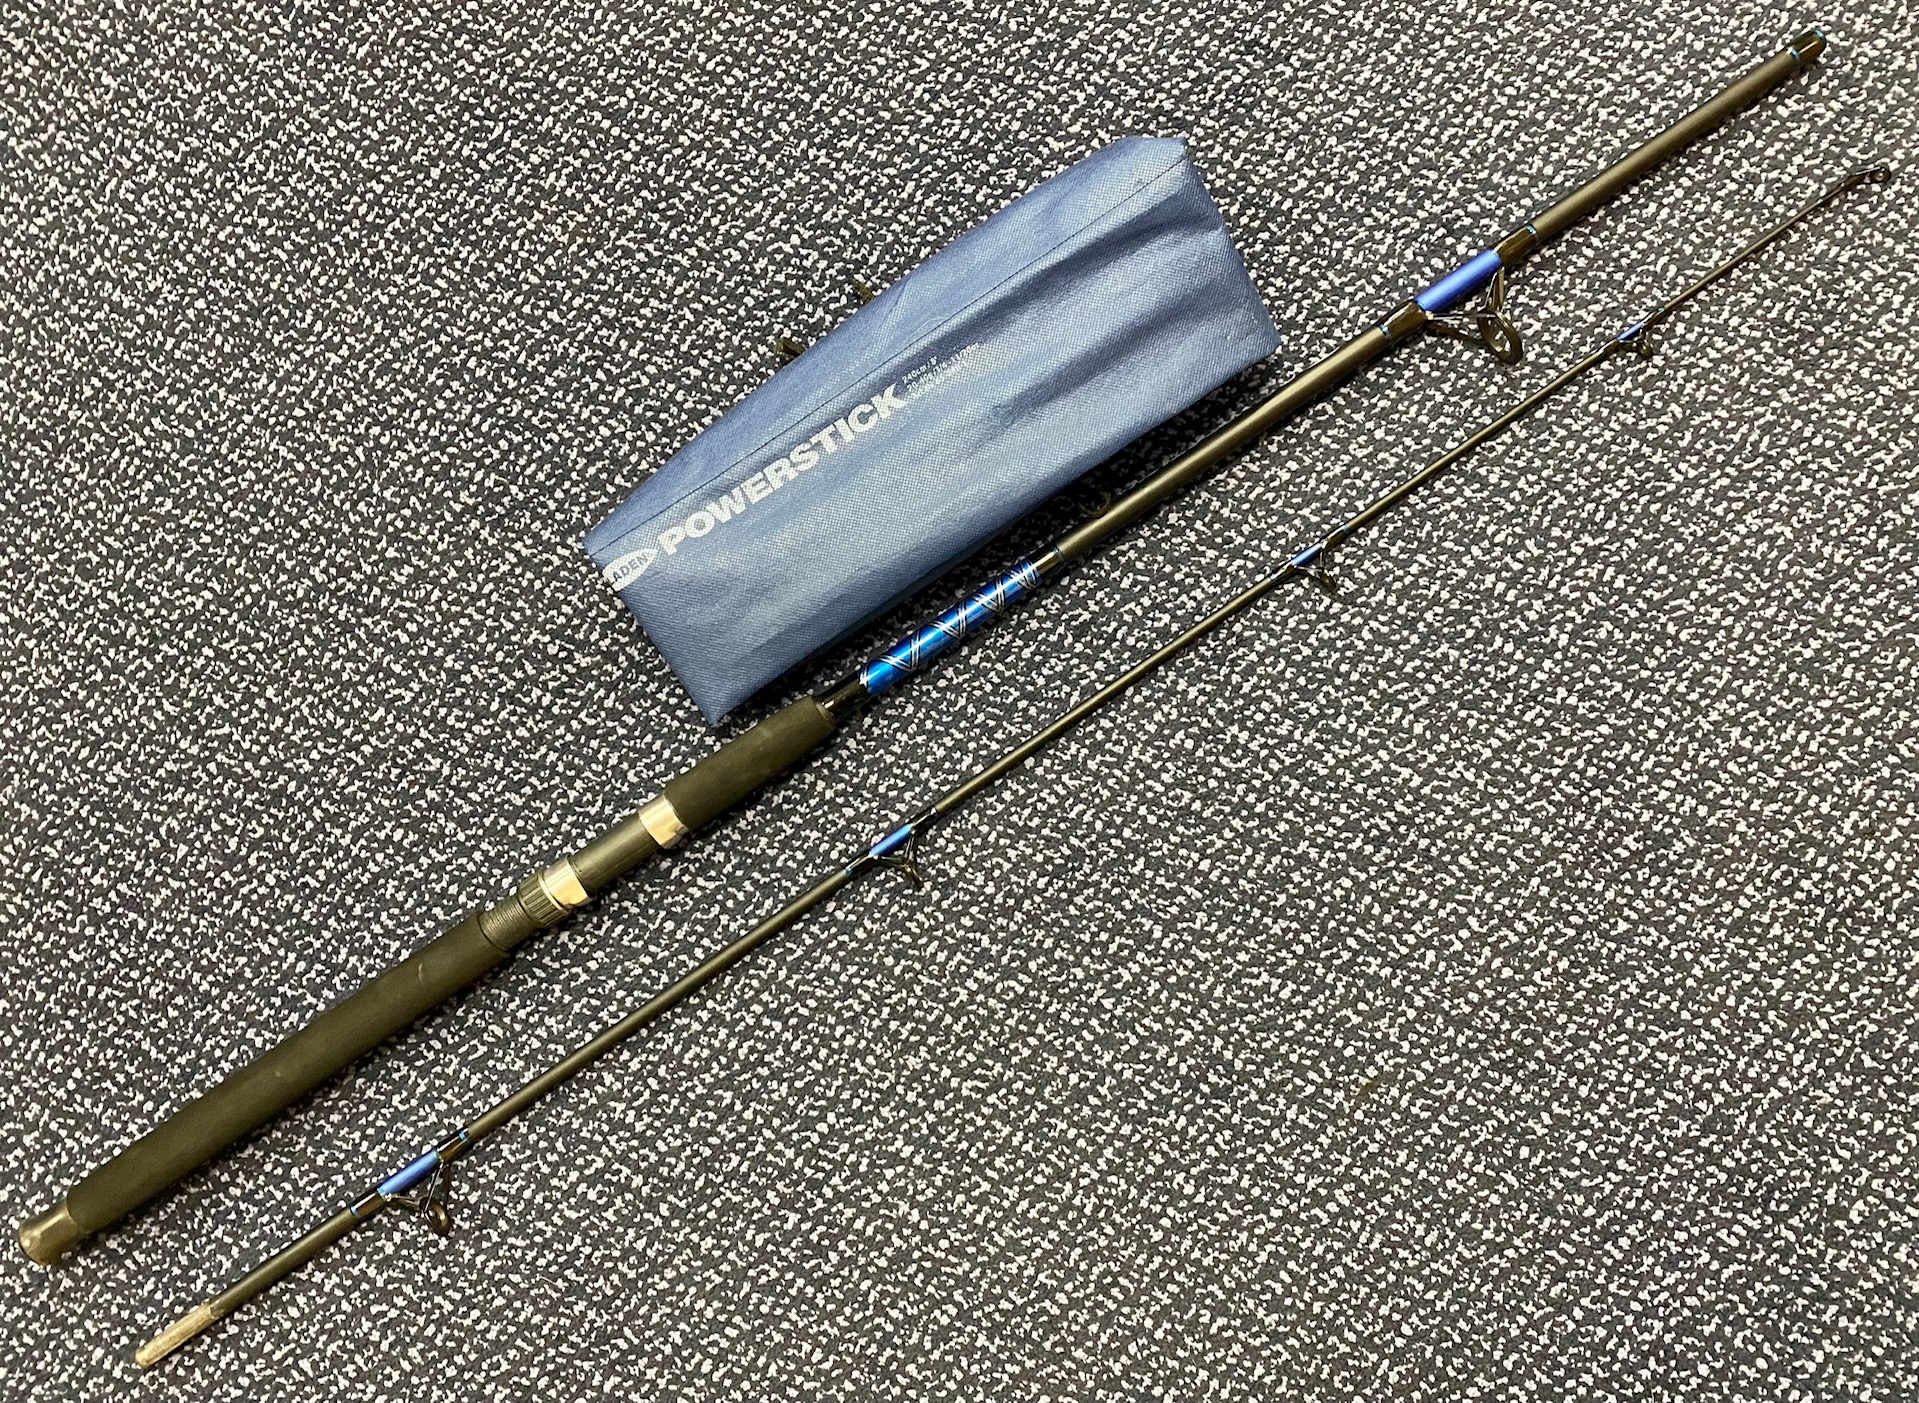 Preloved Fladen Power Stick Spinning Rod 8ft 20-40g 2 piece (in